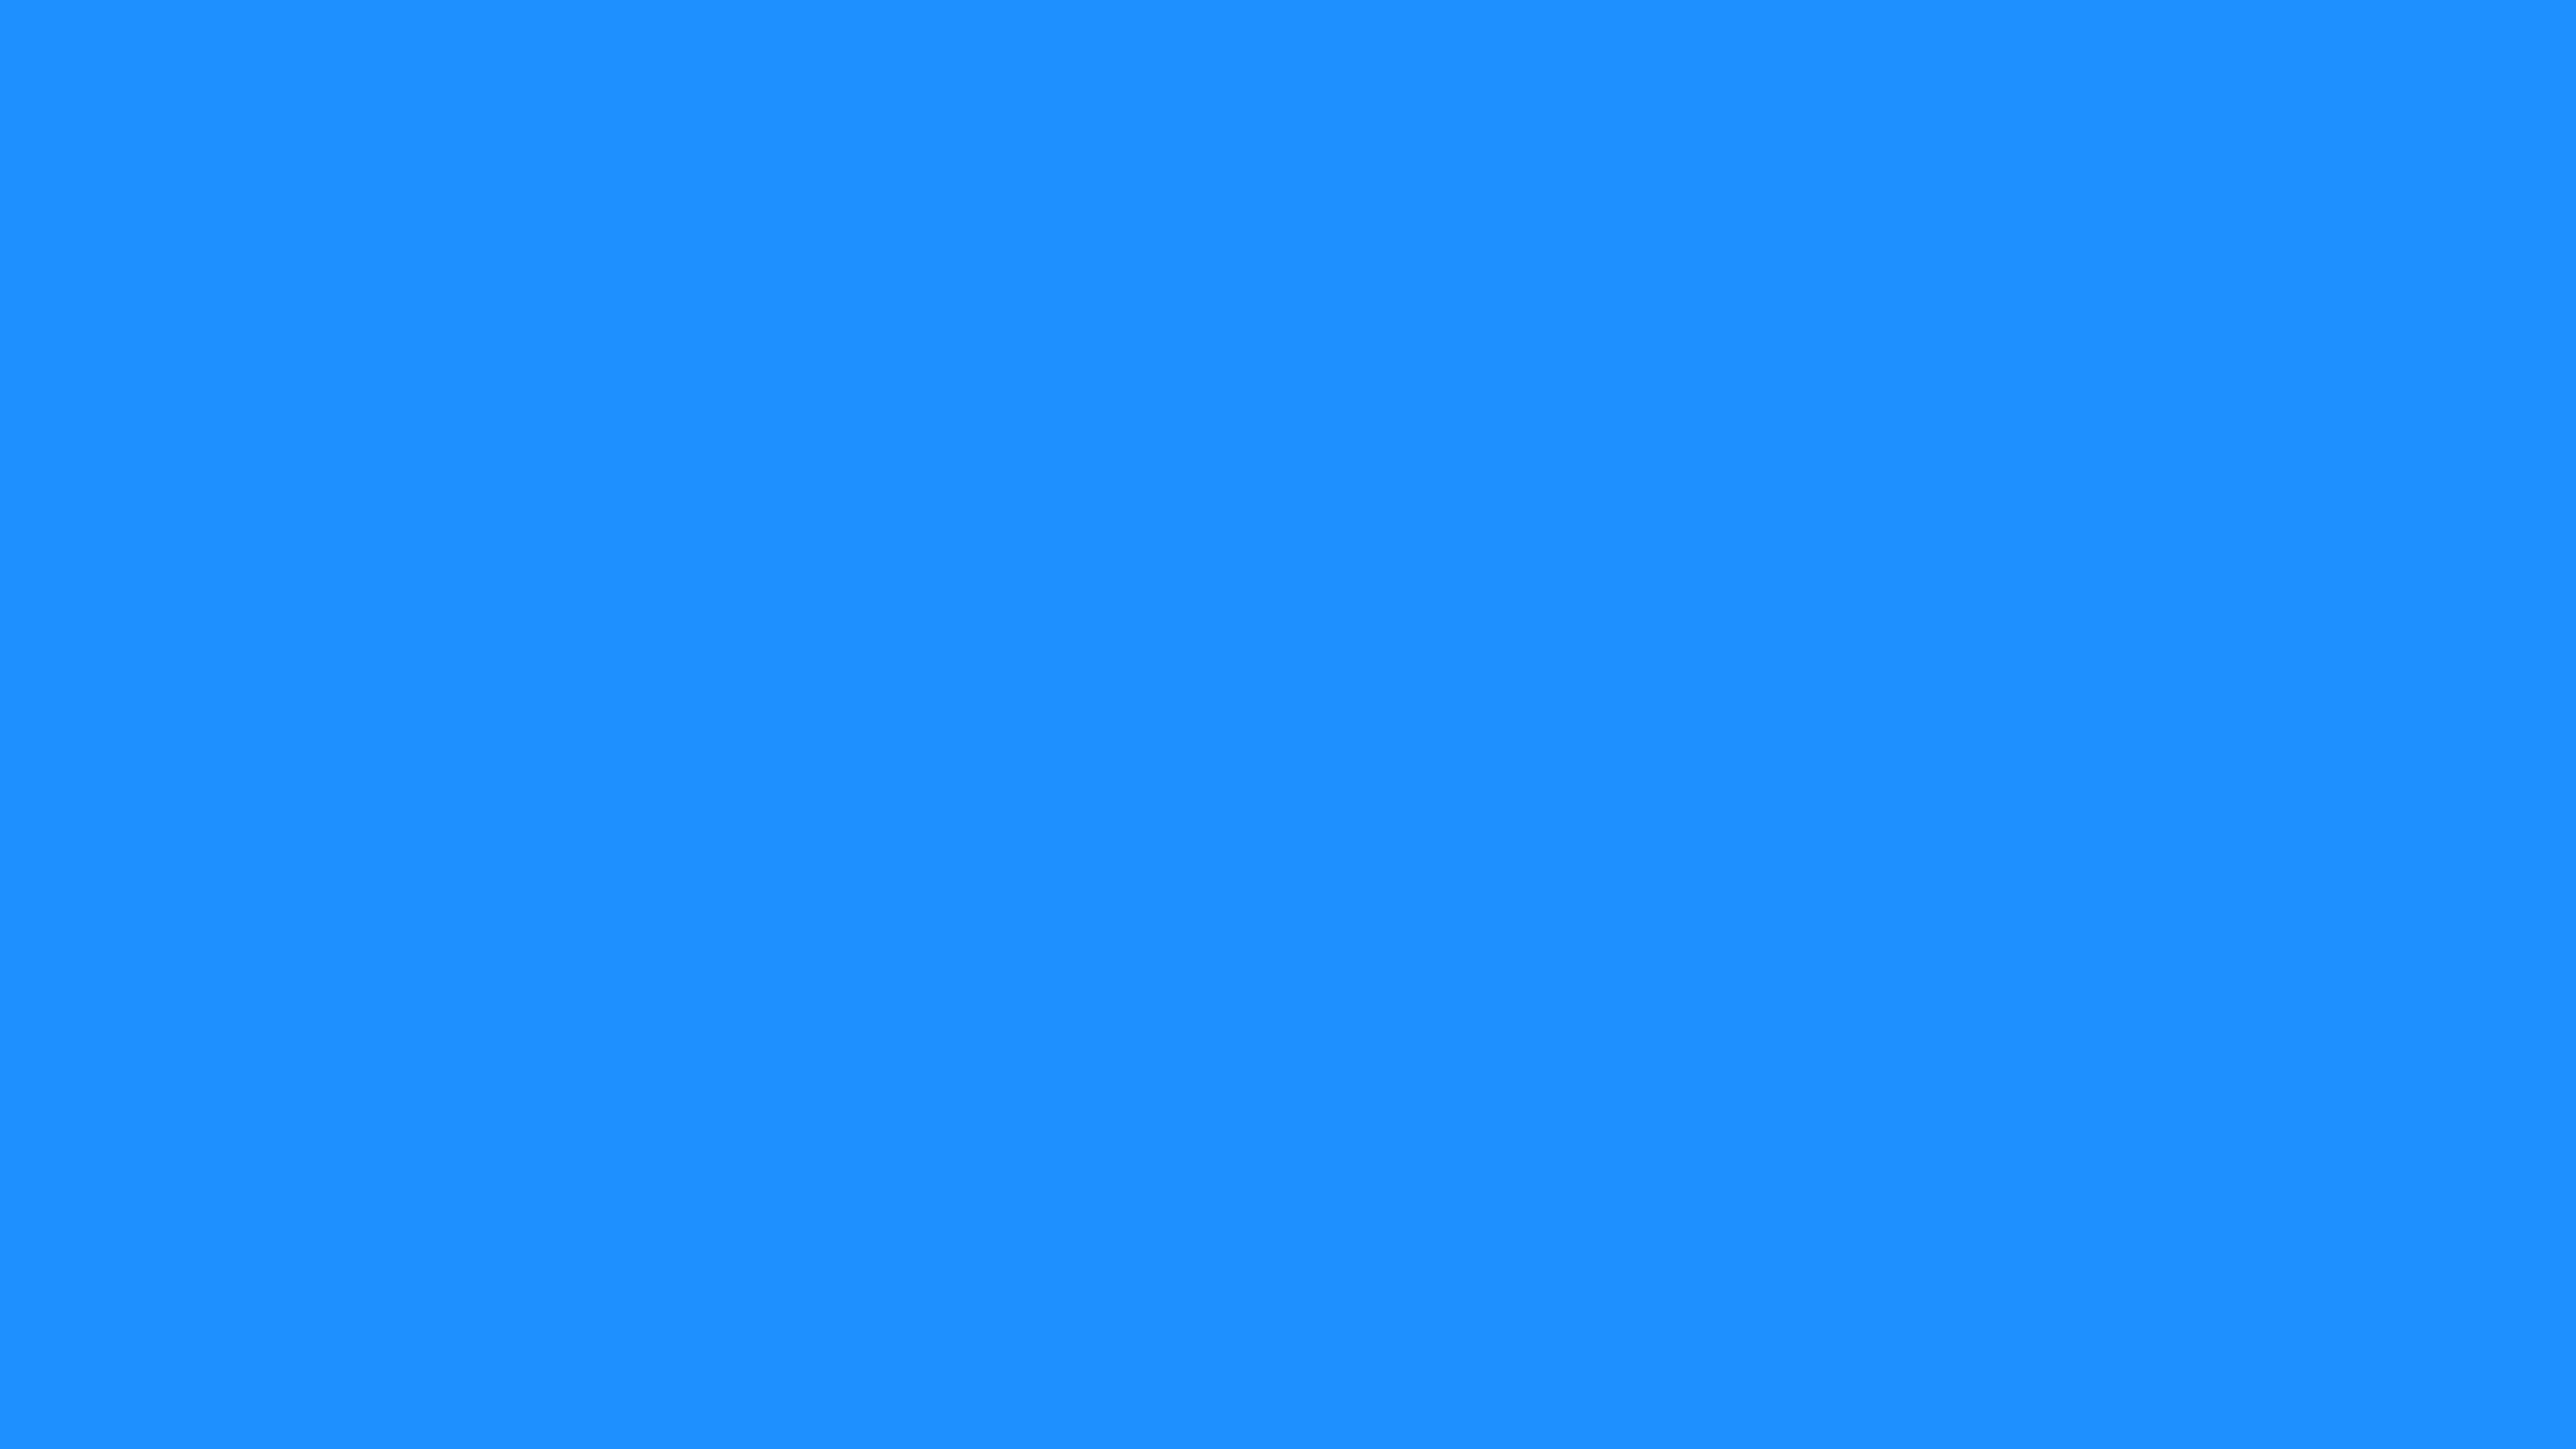 7680x4320 Dodger Blue Solid Color Background